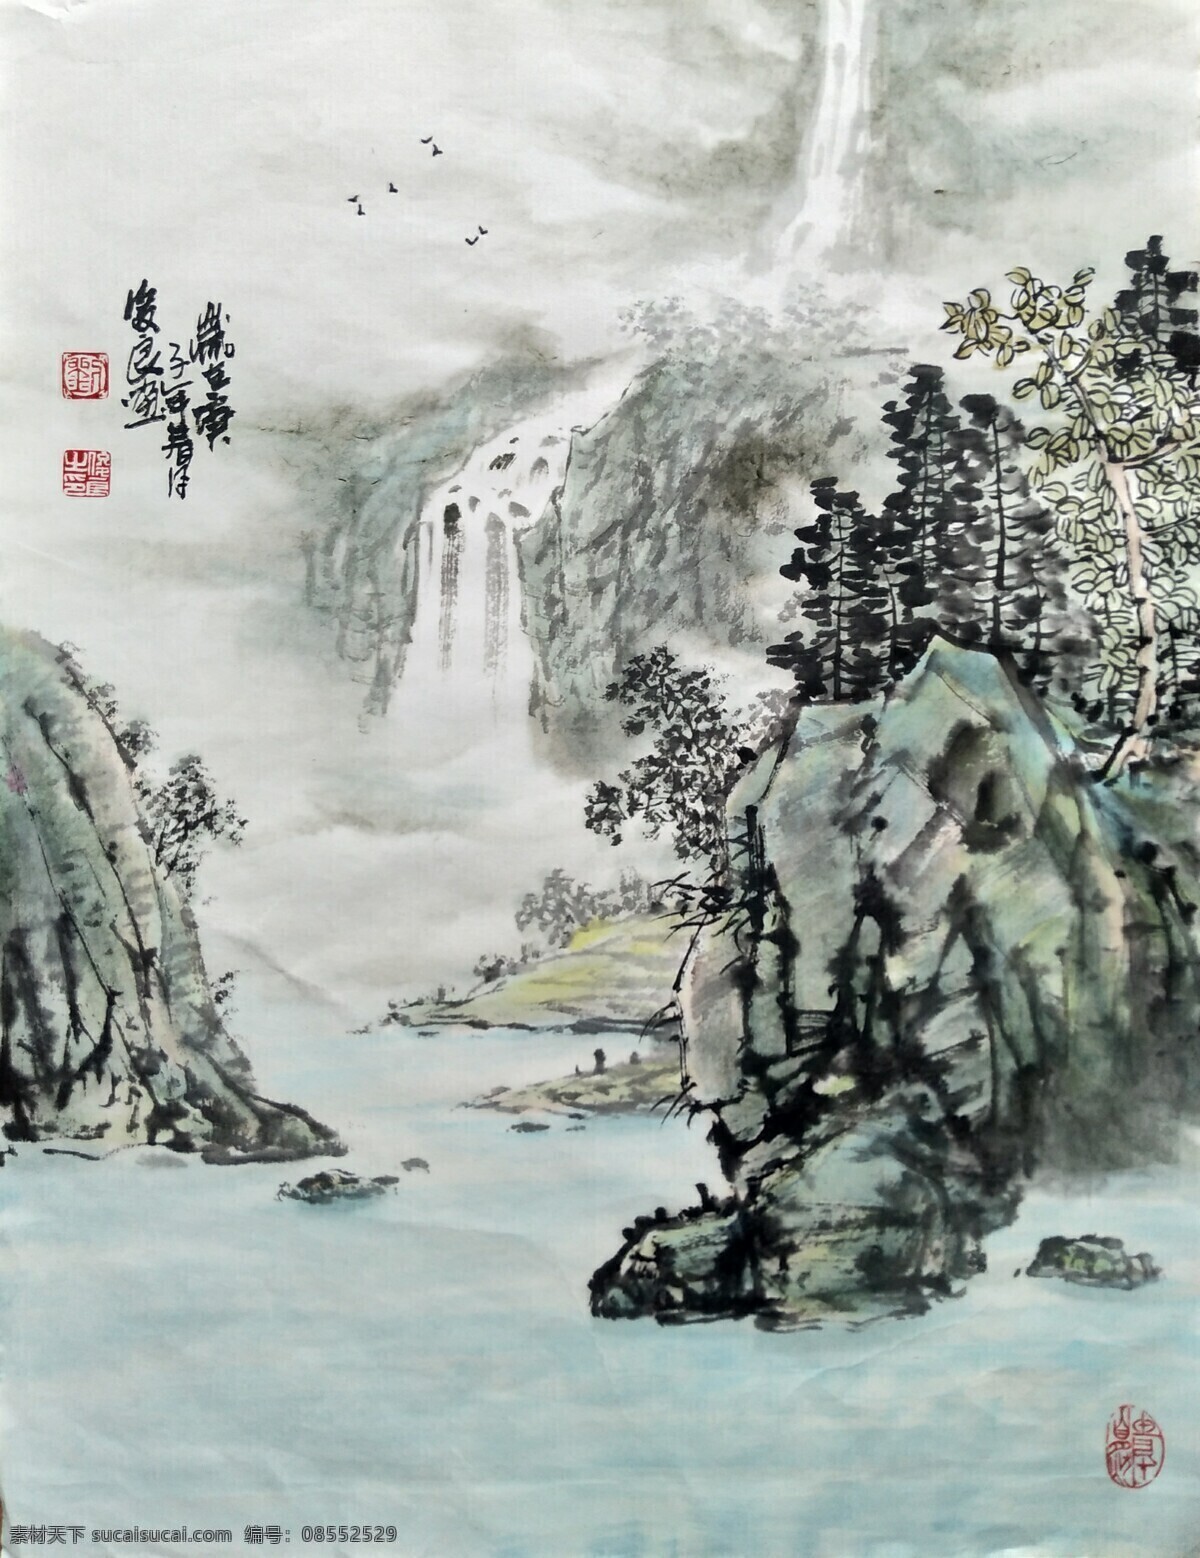 刘 俊良 国画 山水画 作品 绘画 刘俊良 文化艺术 绘画书法